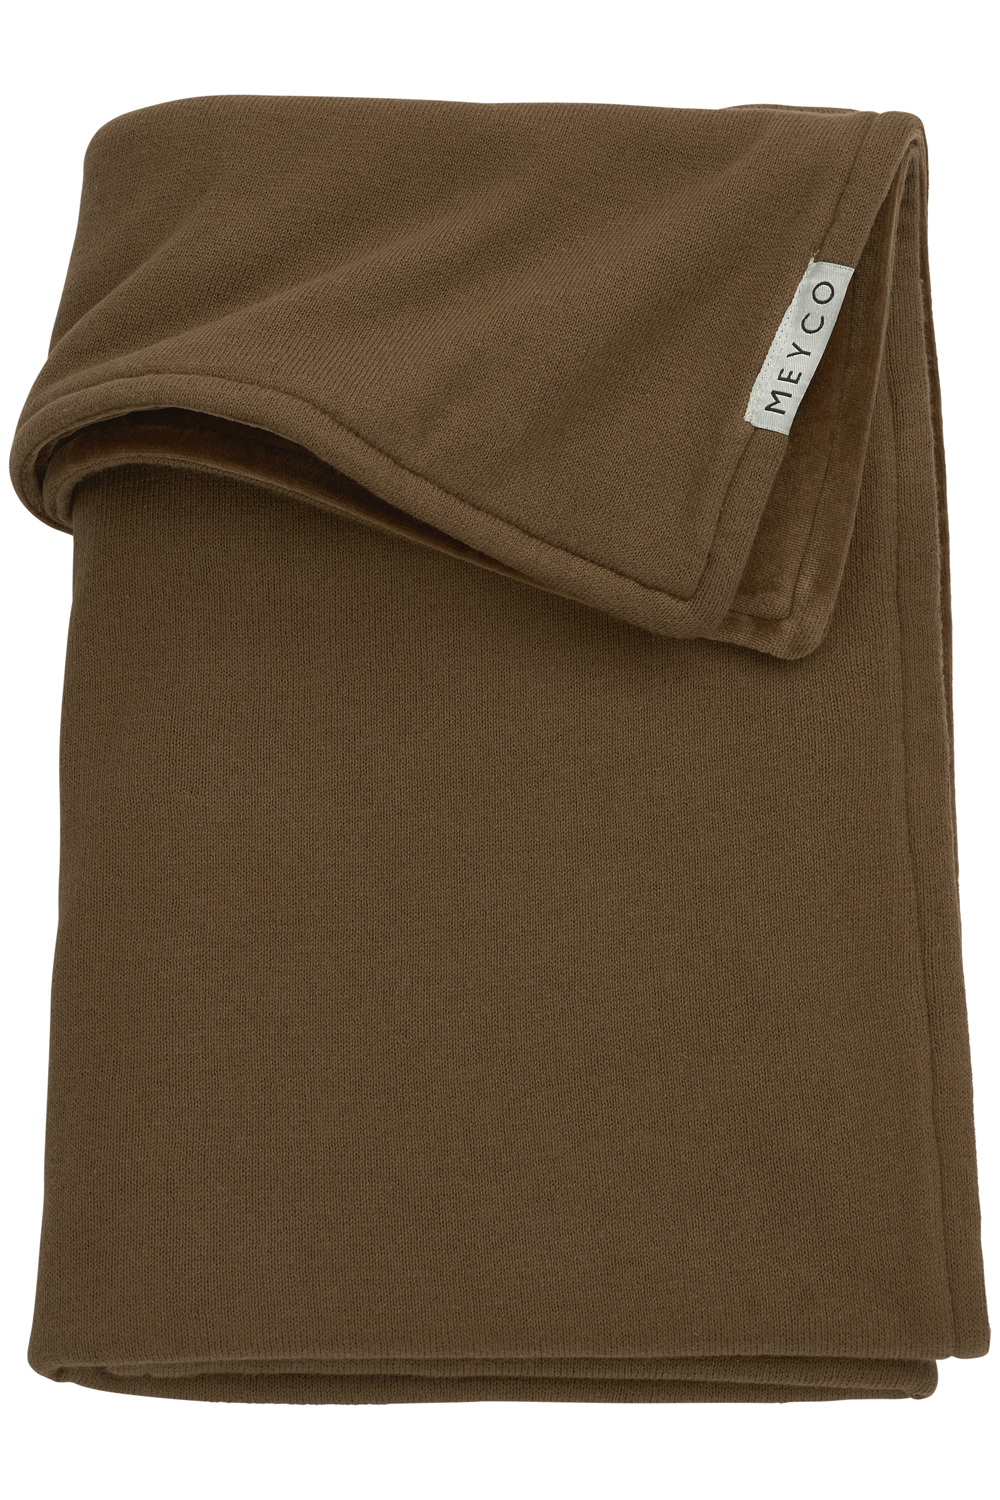 Ledikant deken Knit Basic velvet - chocolate - 100x150cm